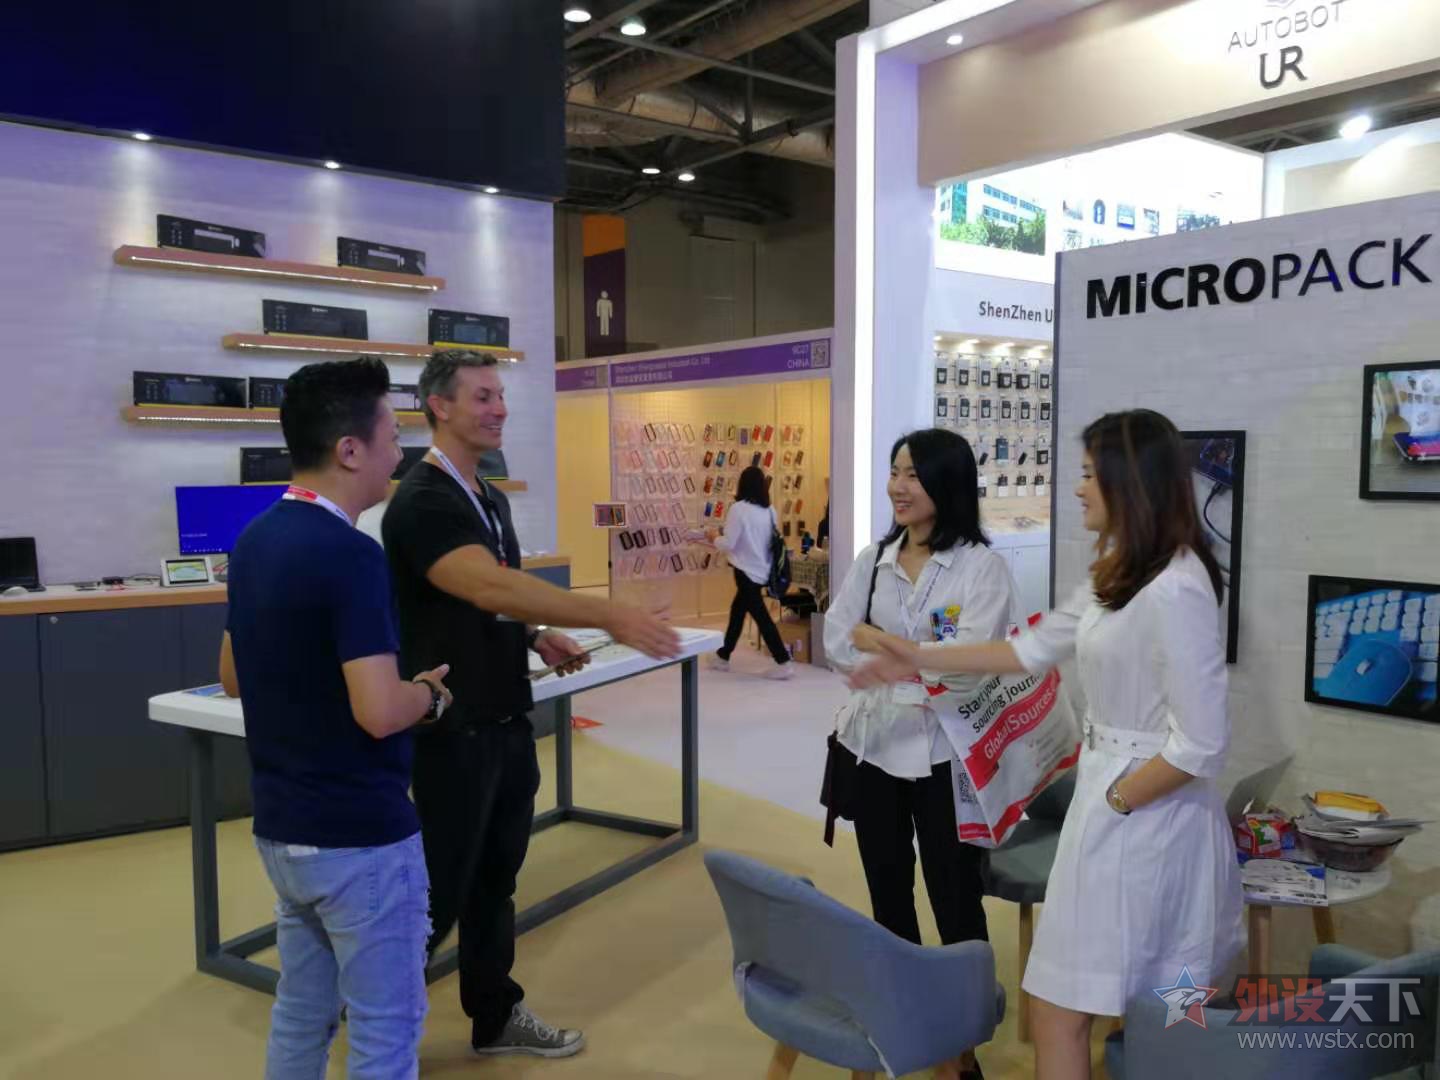 紧贴用户需求 迈可派克MICROPACK走进中国市场